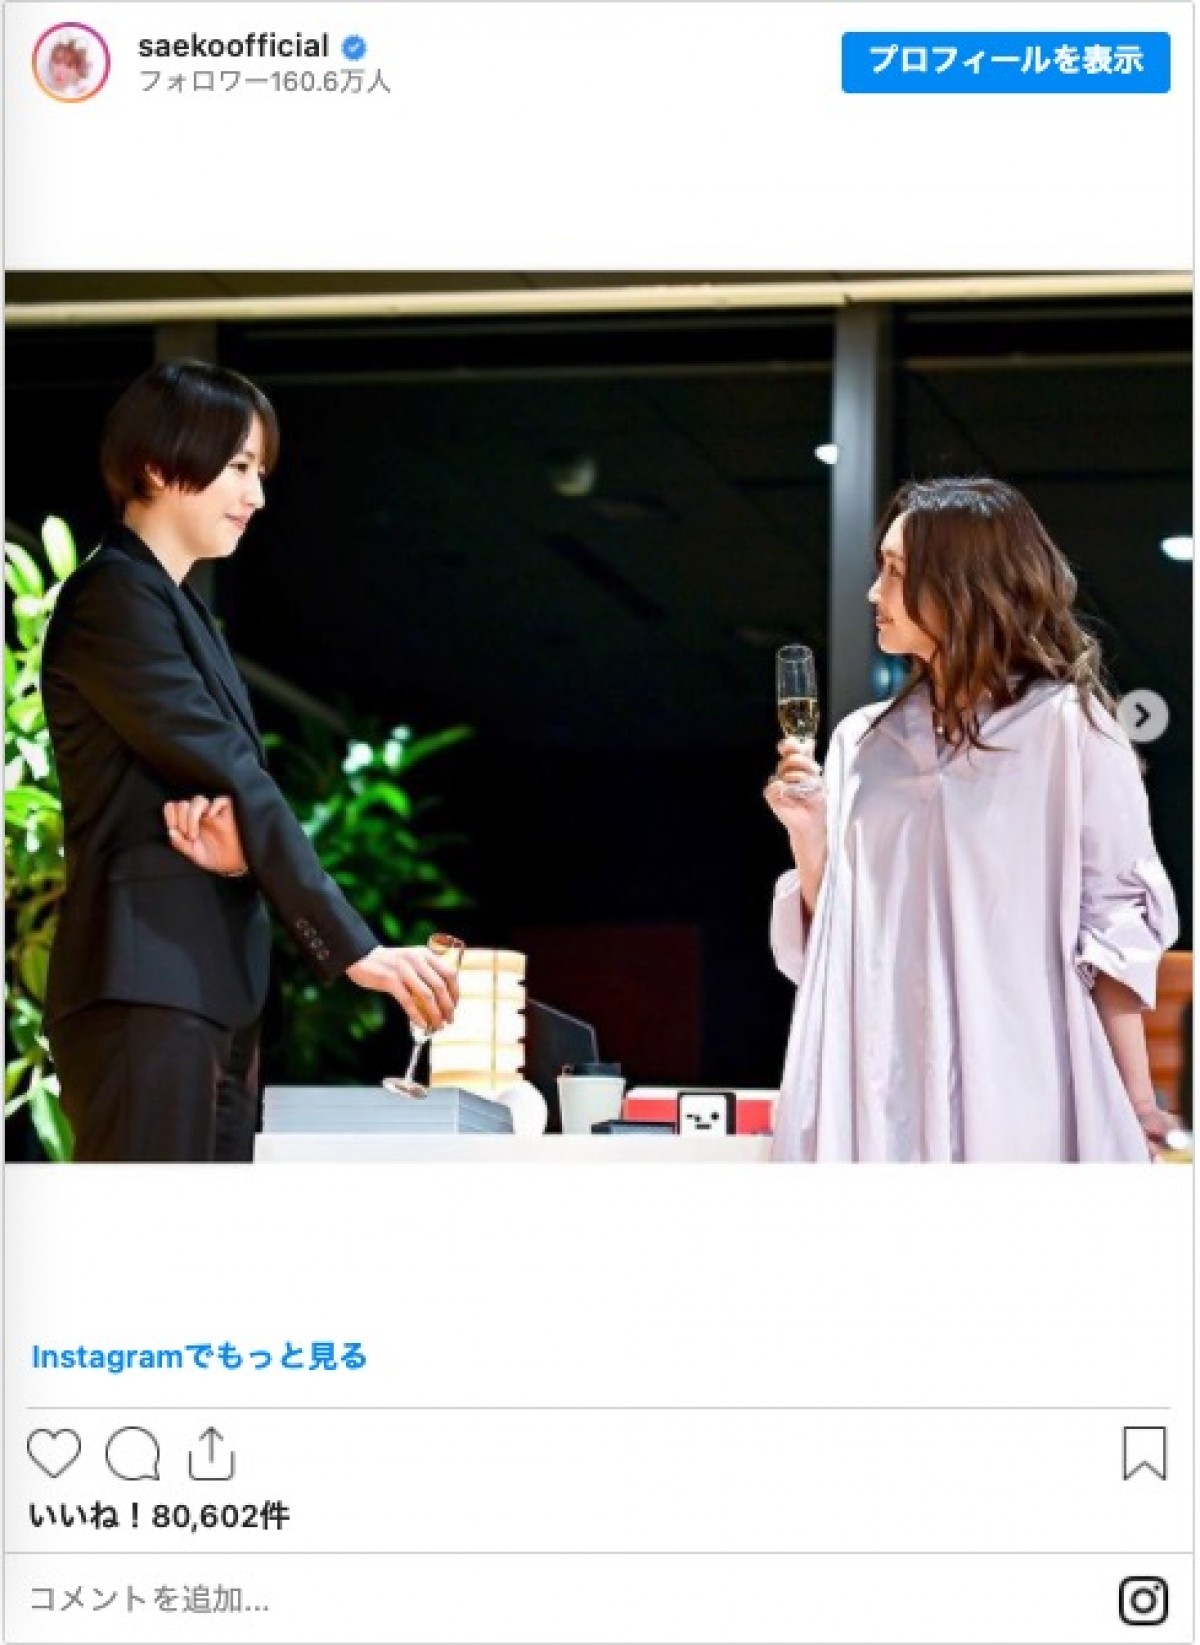 「ばっさりいきました」　紗栄子、ボブヘアの新スタイル披露